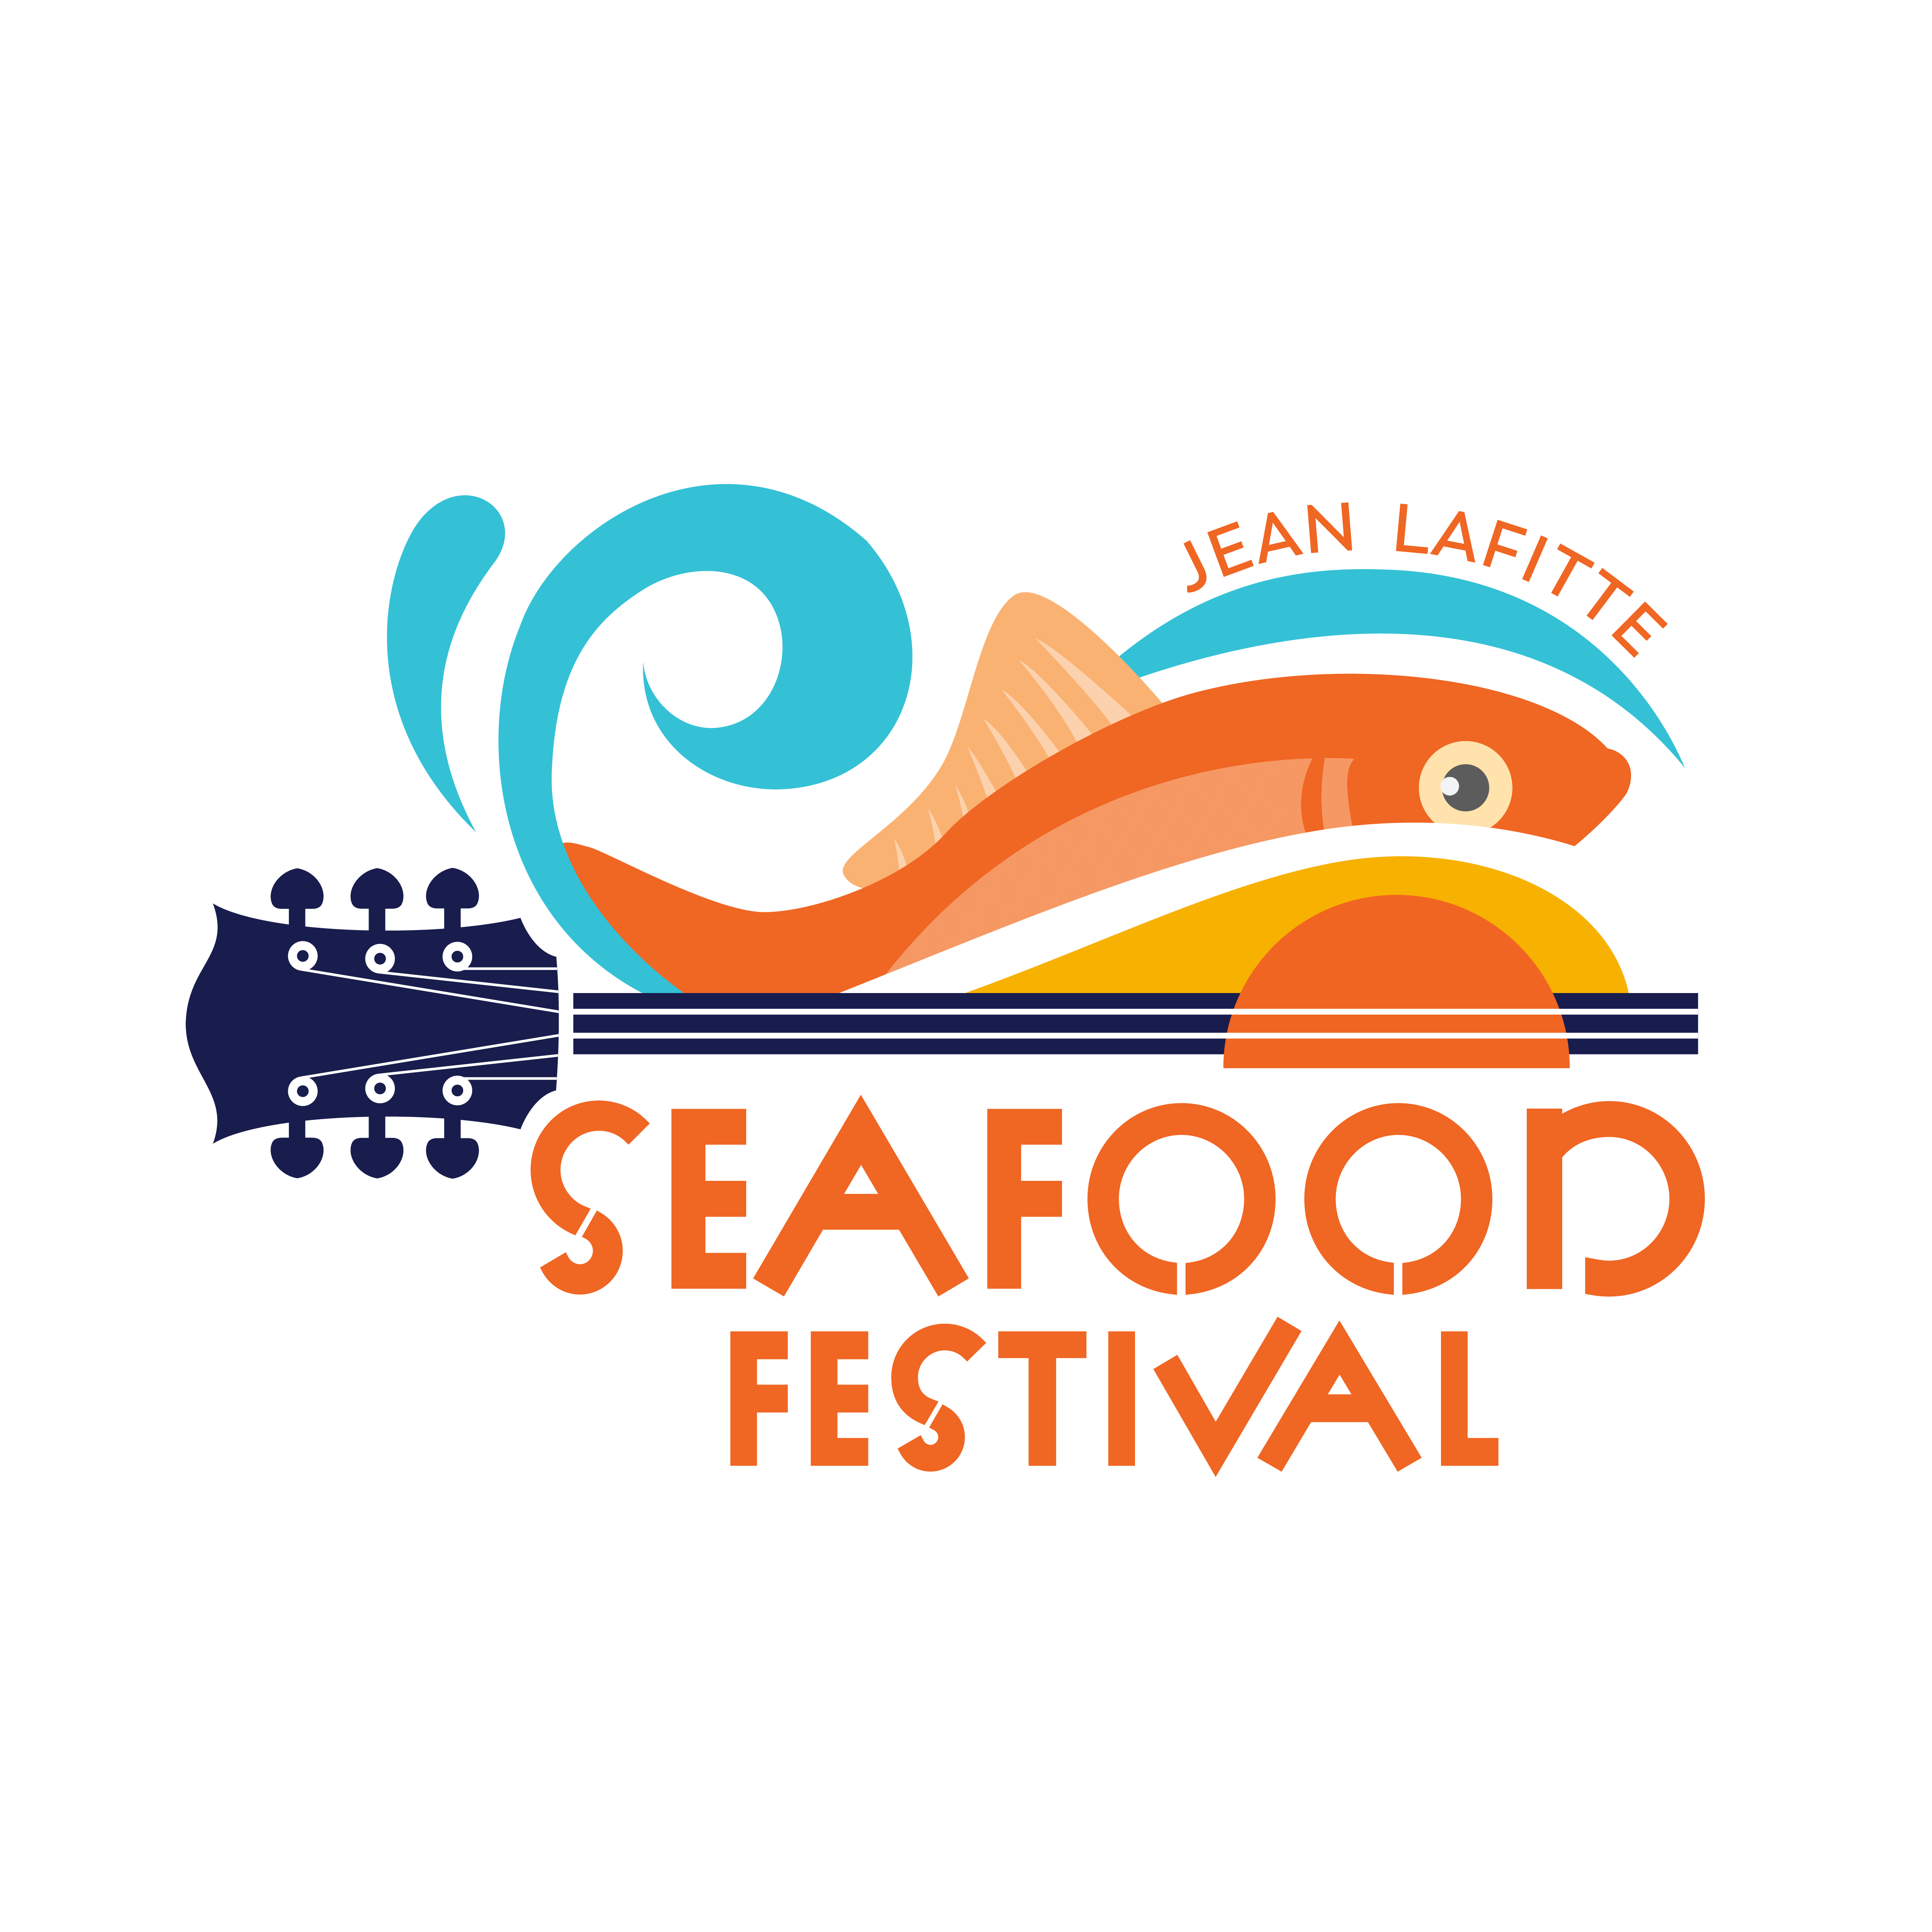 Jean Lafitte Seafood Festival - June 10-11